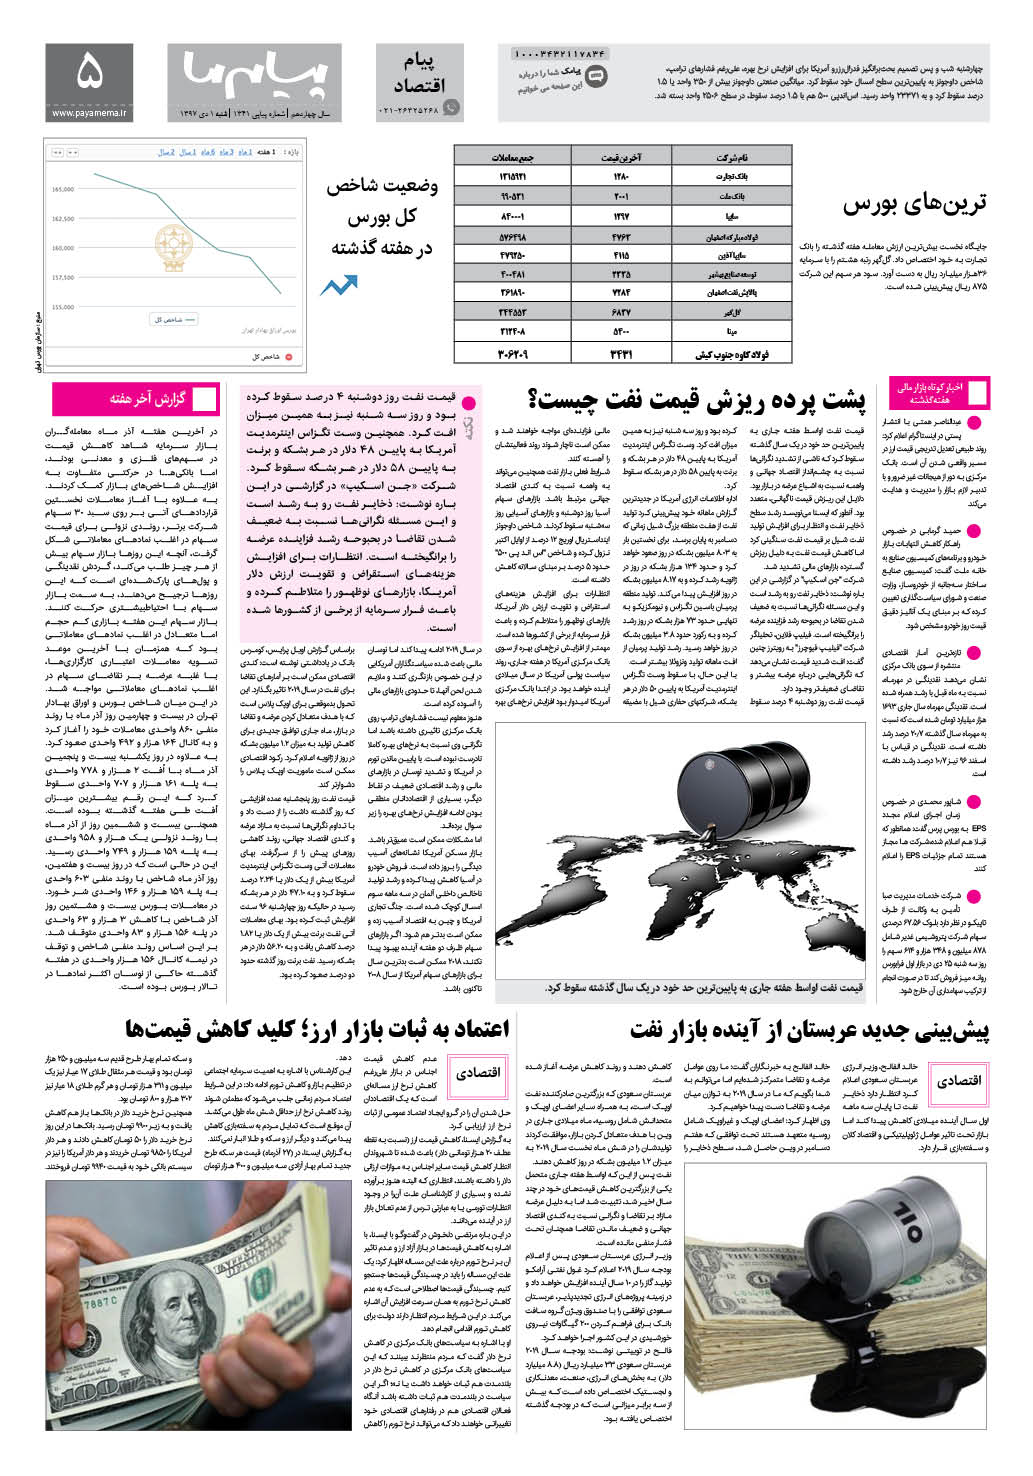 صفحه پیام اقتصادی شماره 1341 روزنامه پیام ما